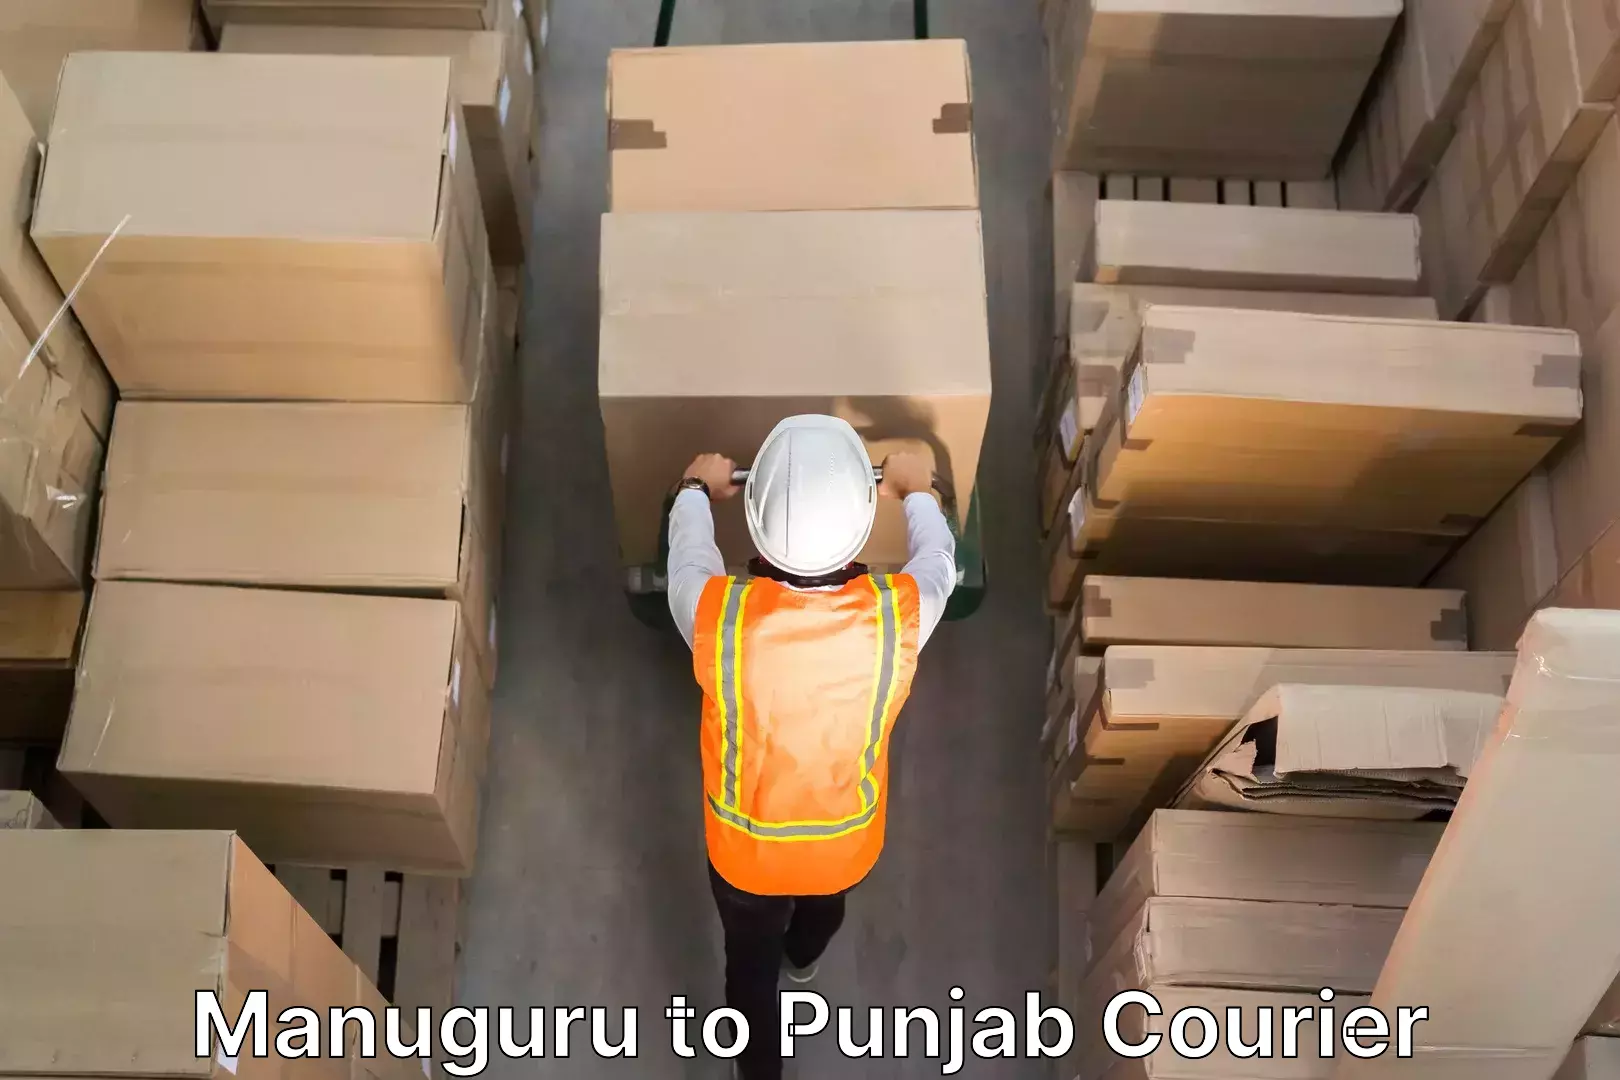 Moving and handling services Manuguru to Punjab